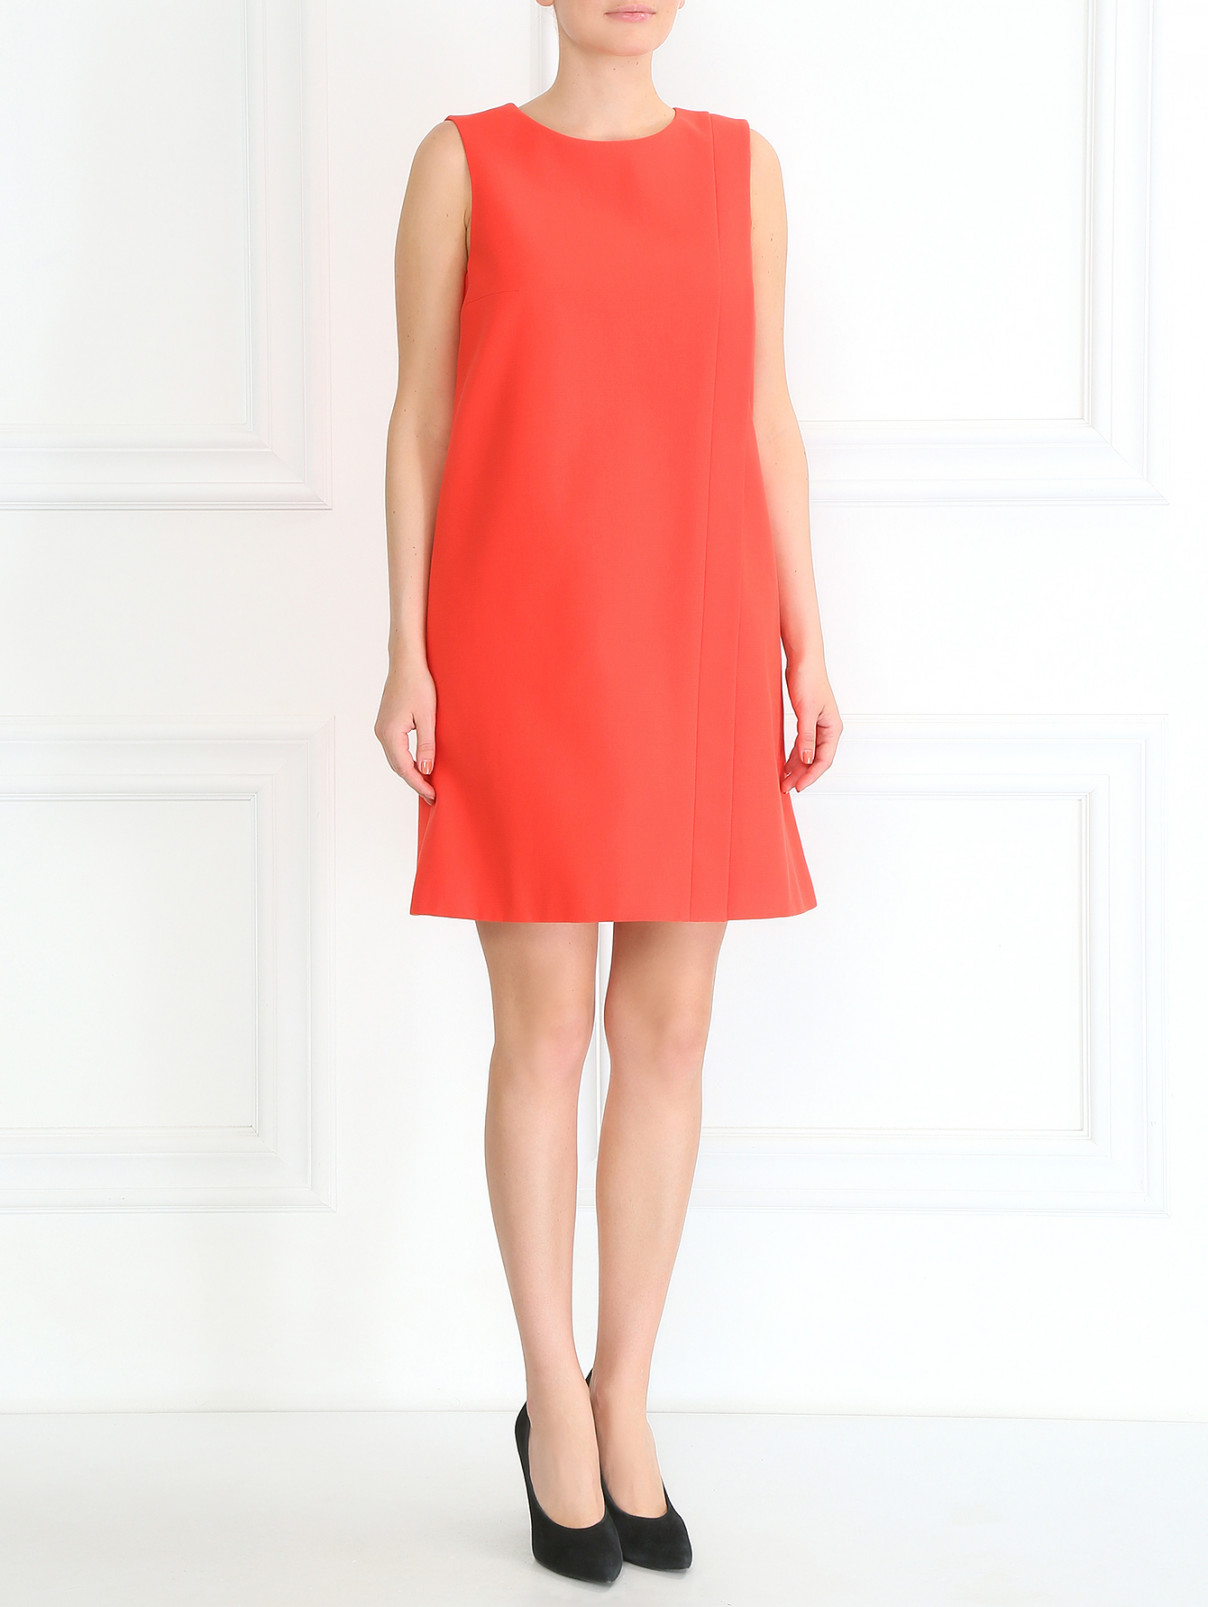 Платье-мини из хлопка с боковыми карманами Paule Ka  –  Модель Общий вид  – Цвет:  Красный